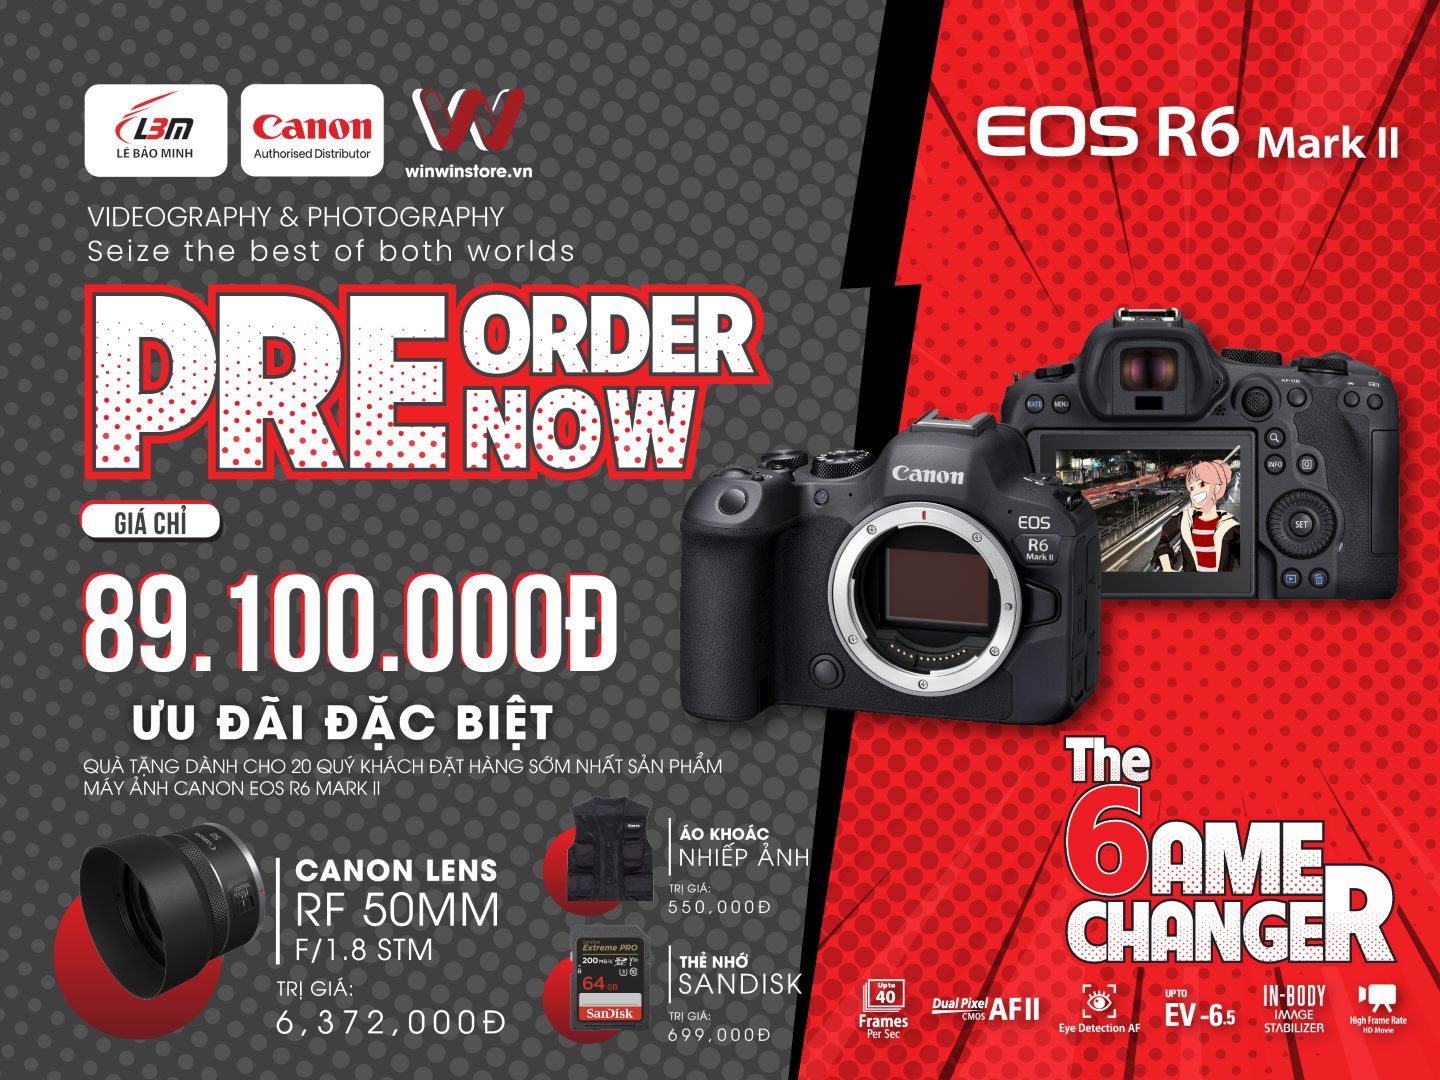 Đặt trước máy ảnh Canon EOS R6 Mark II, nhận ngay loạt quà trị giá hơn 6 triệu đồng hấp dẫn